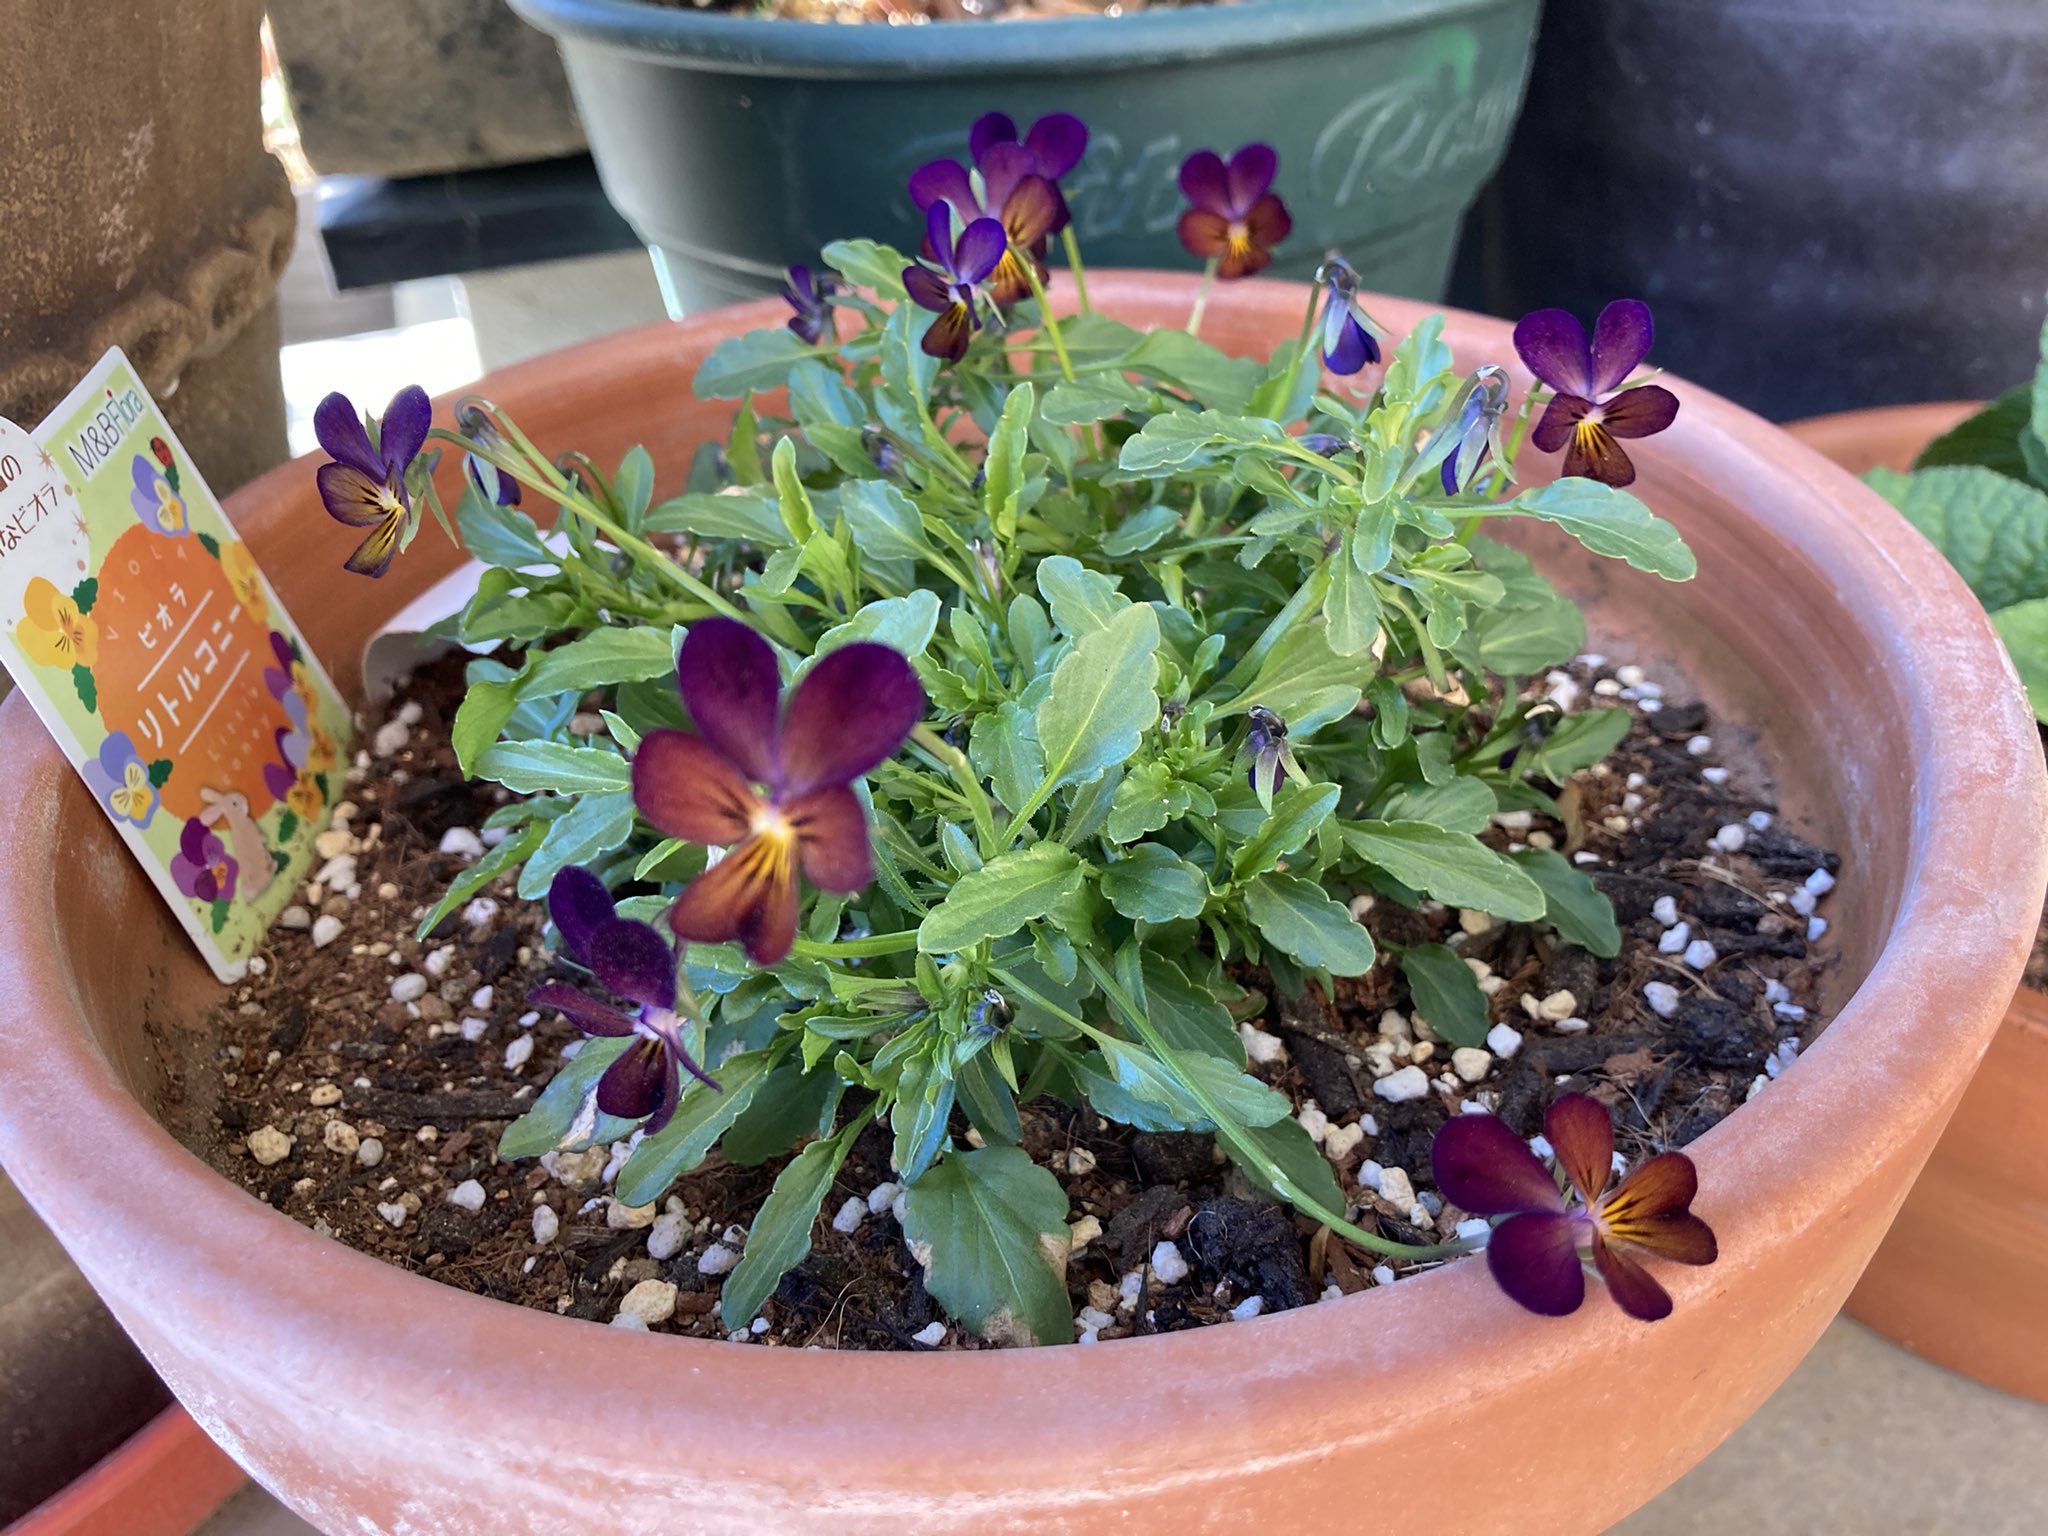 ちゃっぴー ビオラ 友からの夏越し宿根ビオラ ラブラドリカ 可愛い花が咲いてきました 極小輪ビオラ リトルコニー 夜空のムコウ 赤みのある濃い紫が印象的です ガーデニング 宿根ビオラ ラブラドリカ ビオラ リトルコニー T Co